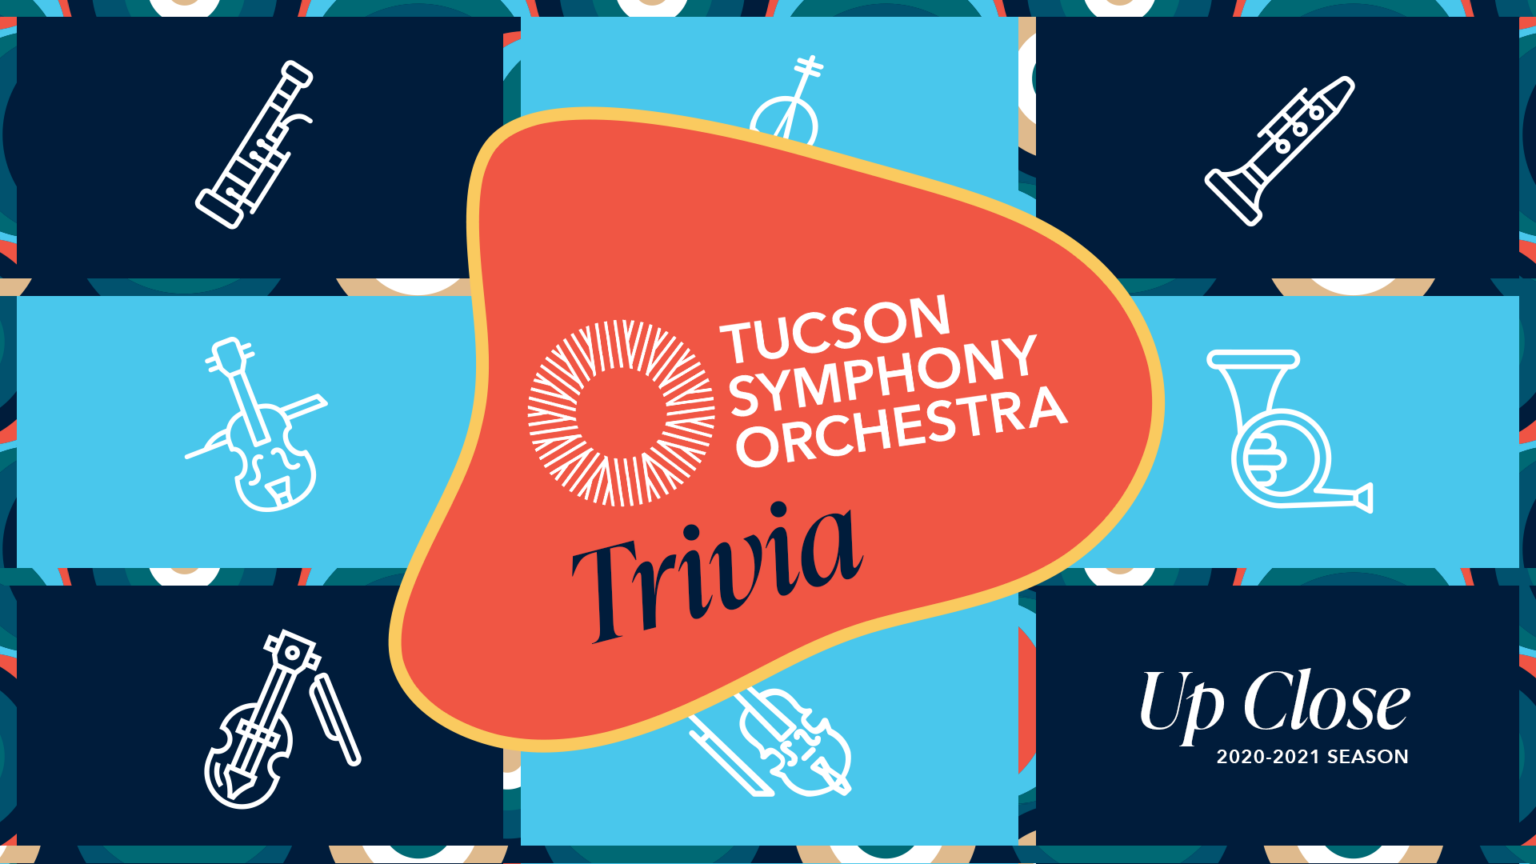 TSO Trivia! Tucson Symphony Orchestra